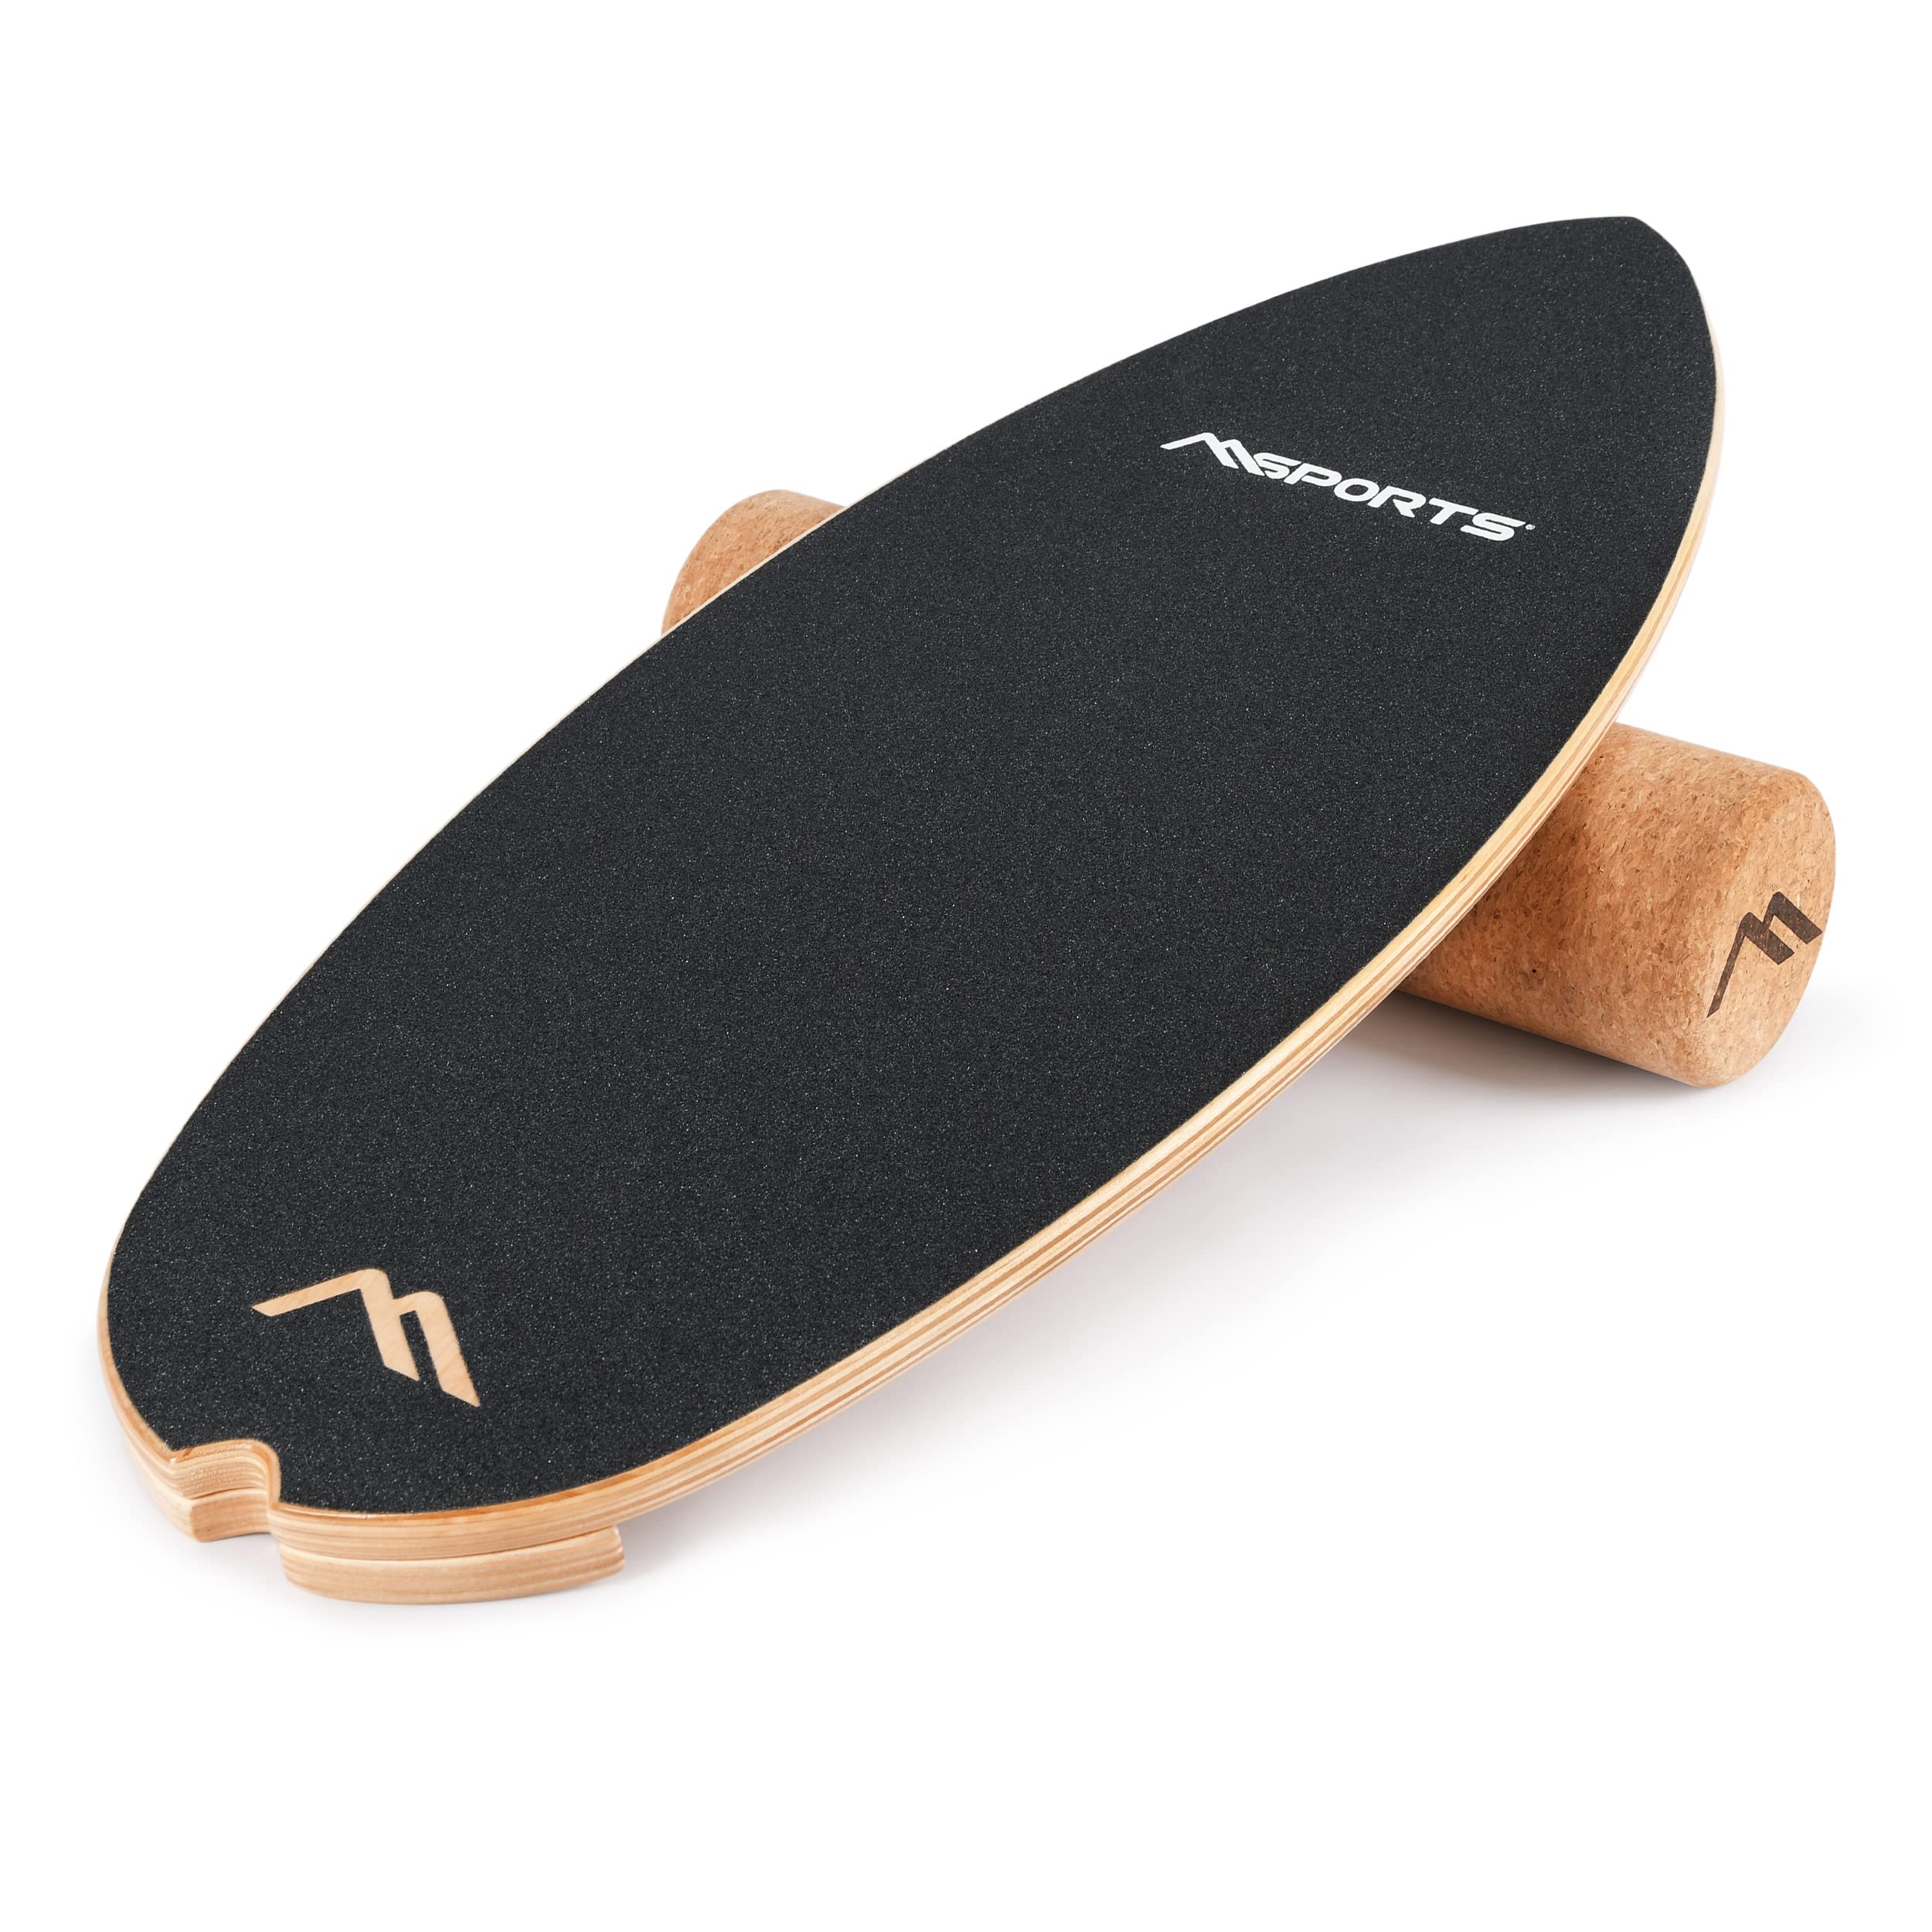 MSPORTS Surf Balance Board aus Holz/Balance Skateboard inkl. Rolle | Balance Board & Indoor Surfboard Trickboard und Gleichgewichtstrainer für Kinder und Erwachsene